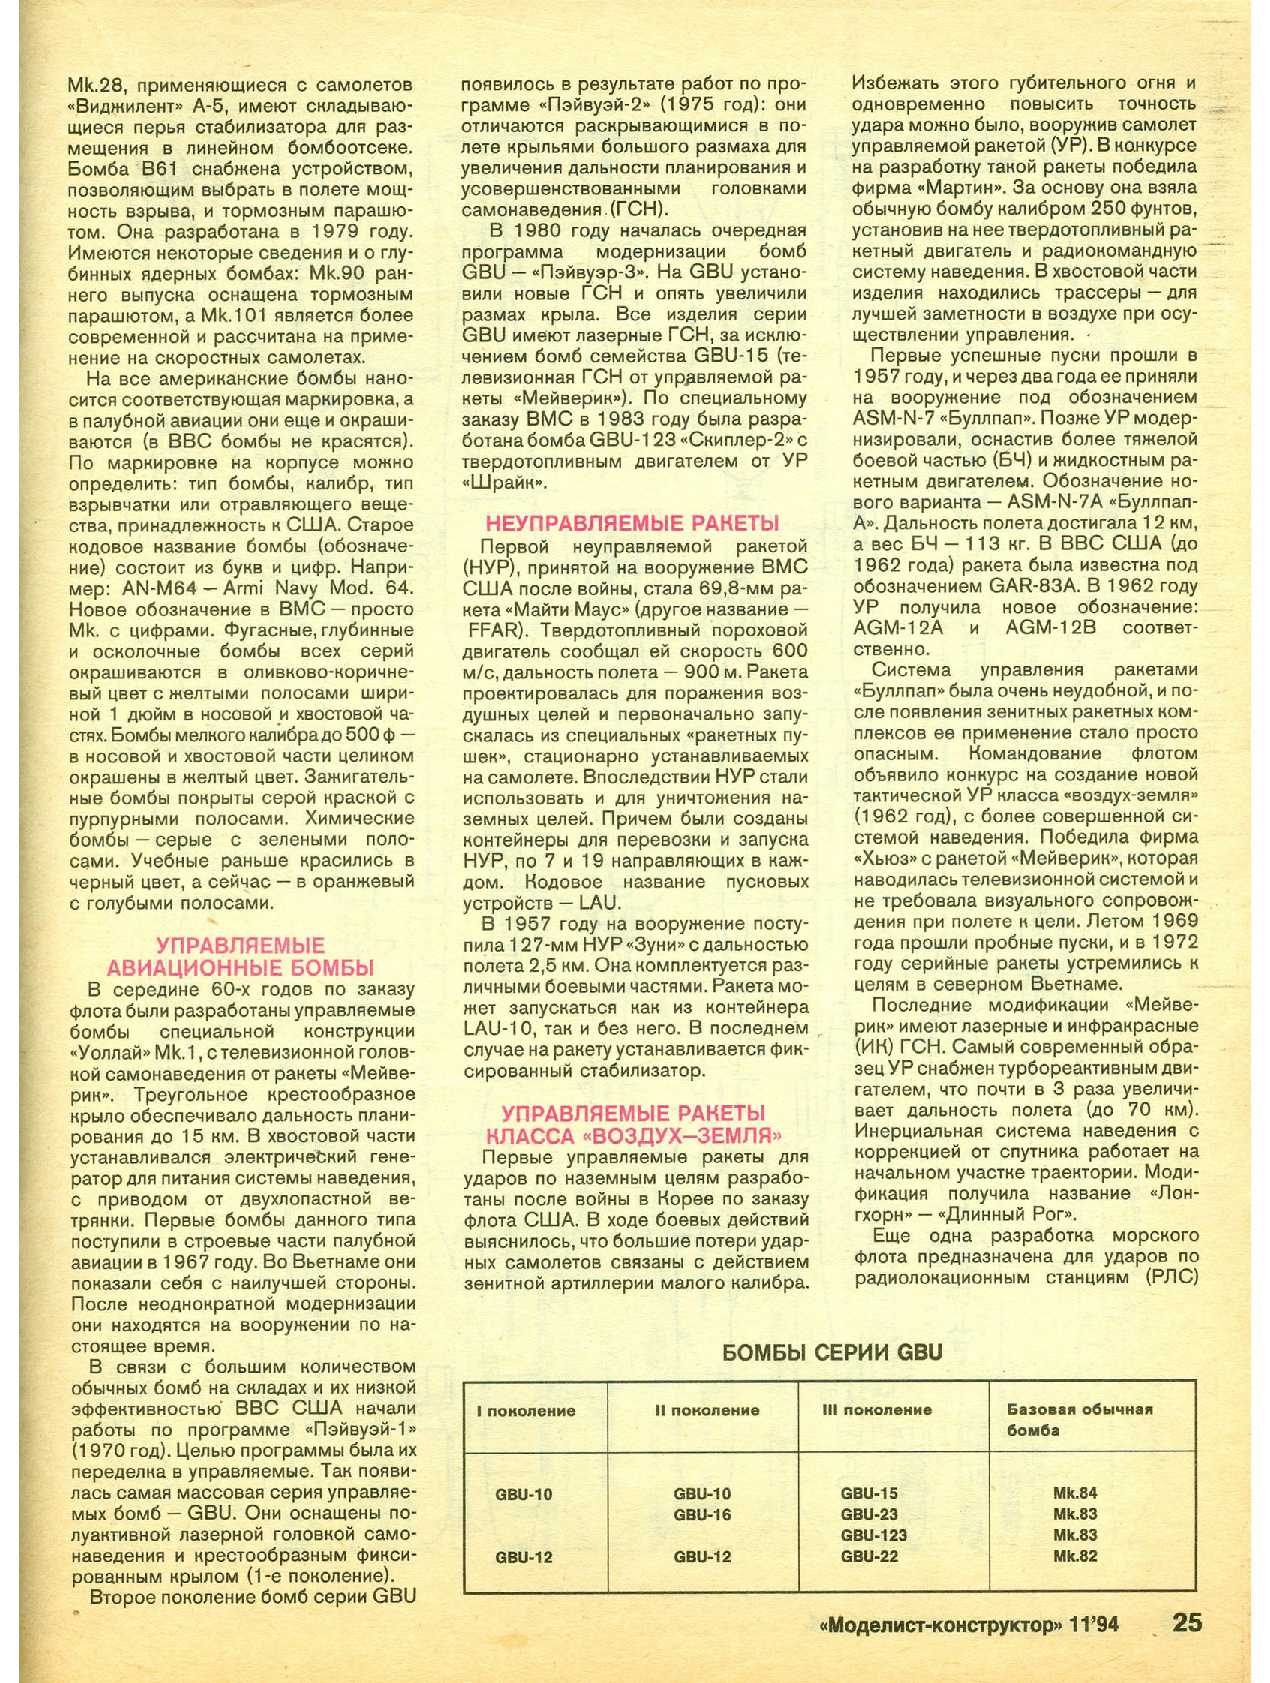 МК 11, 1994, 25 c.